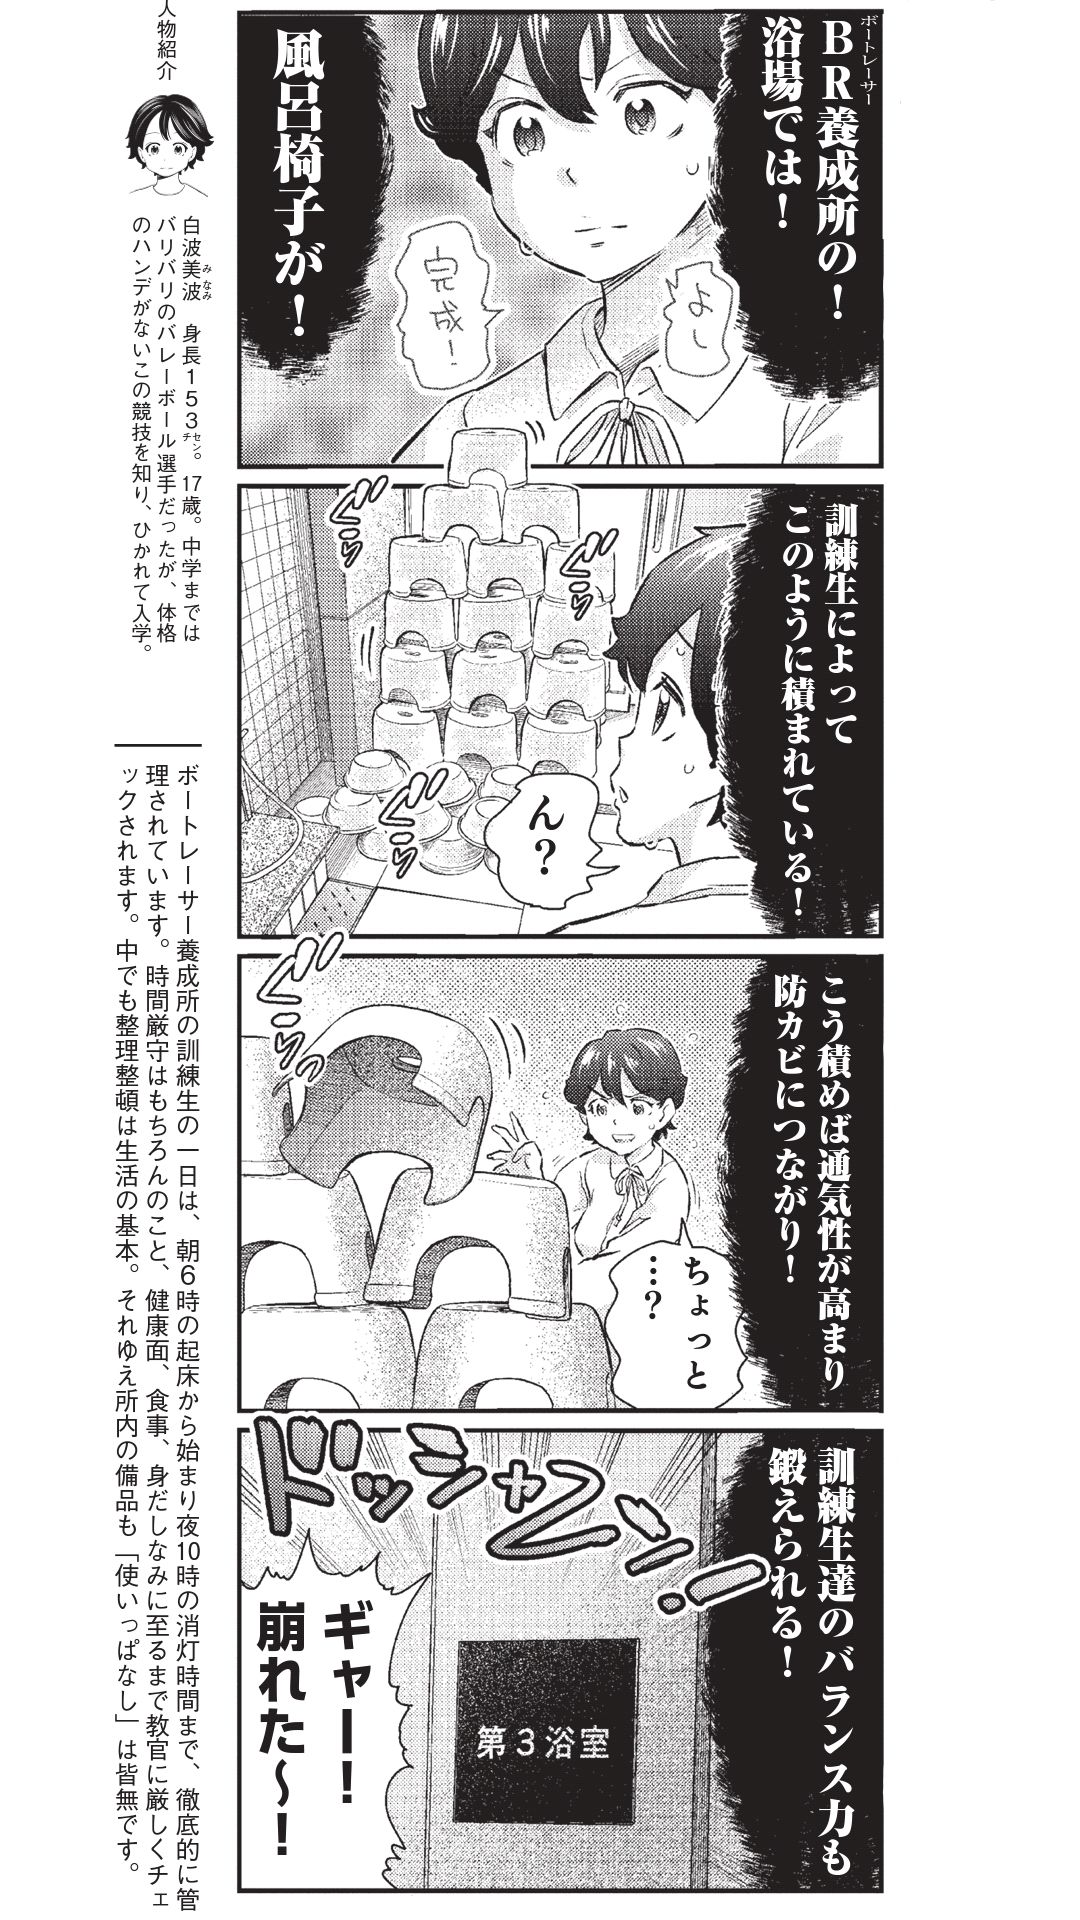 4コマ漫画『ボートレース訓練生・美波』こぼれ話の画像